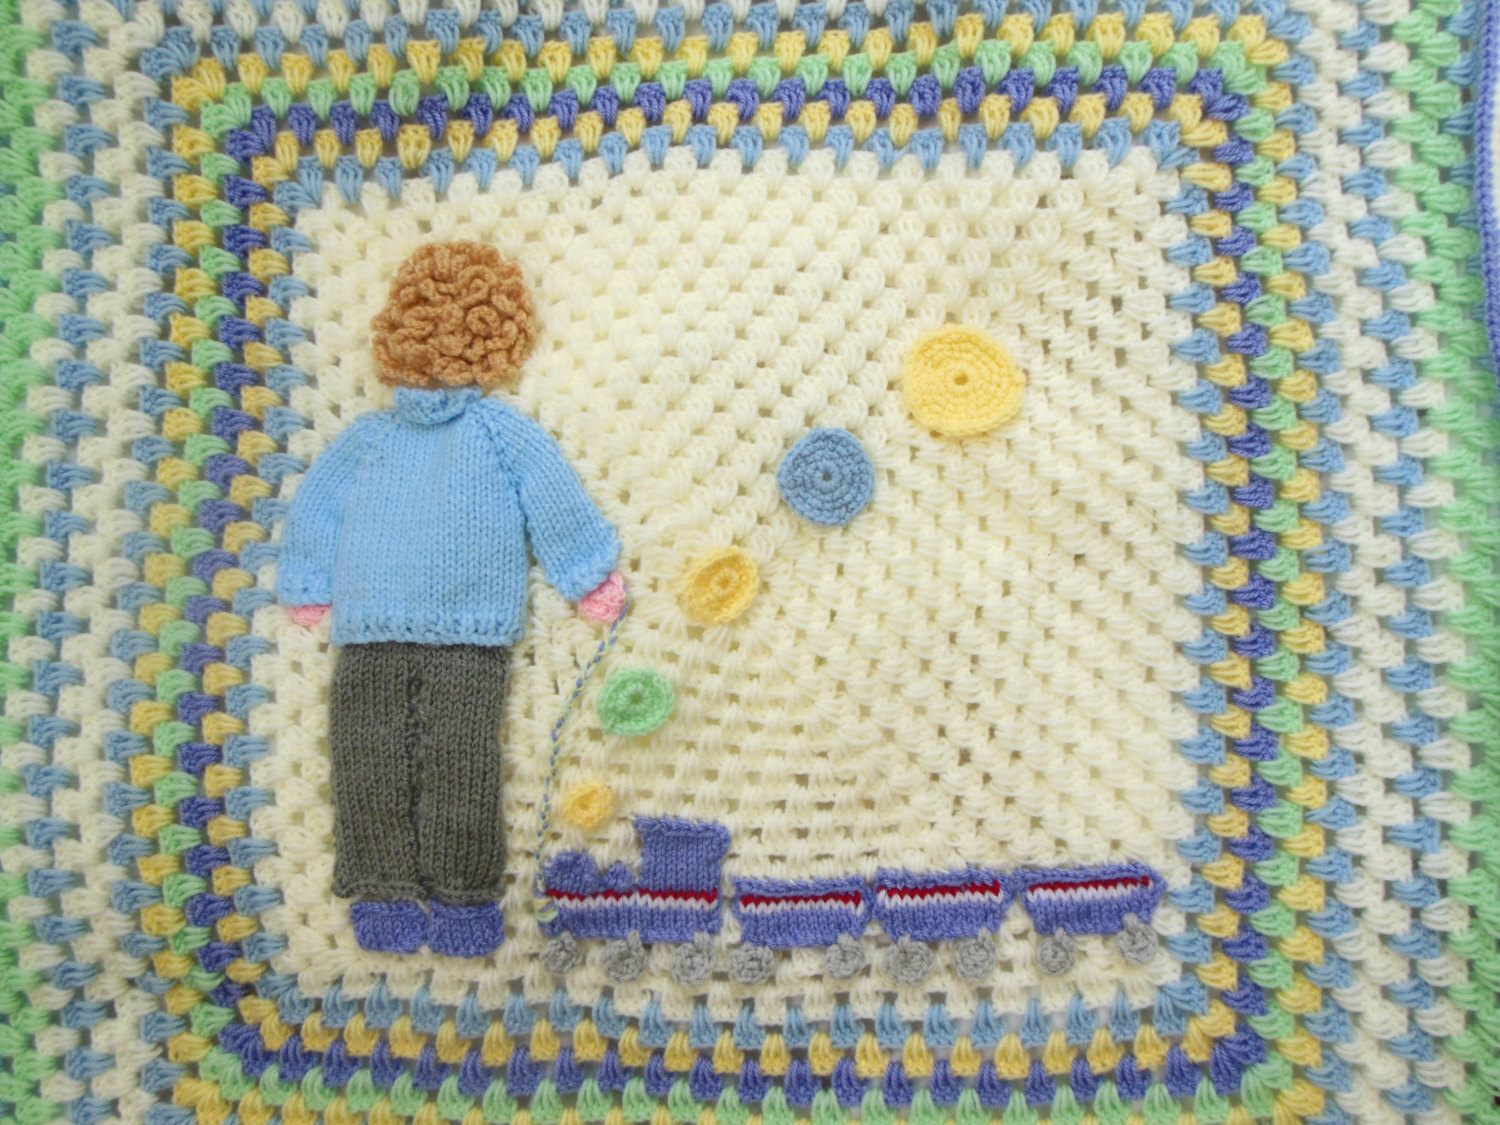 train crochet baby blanket for boys